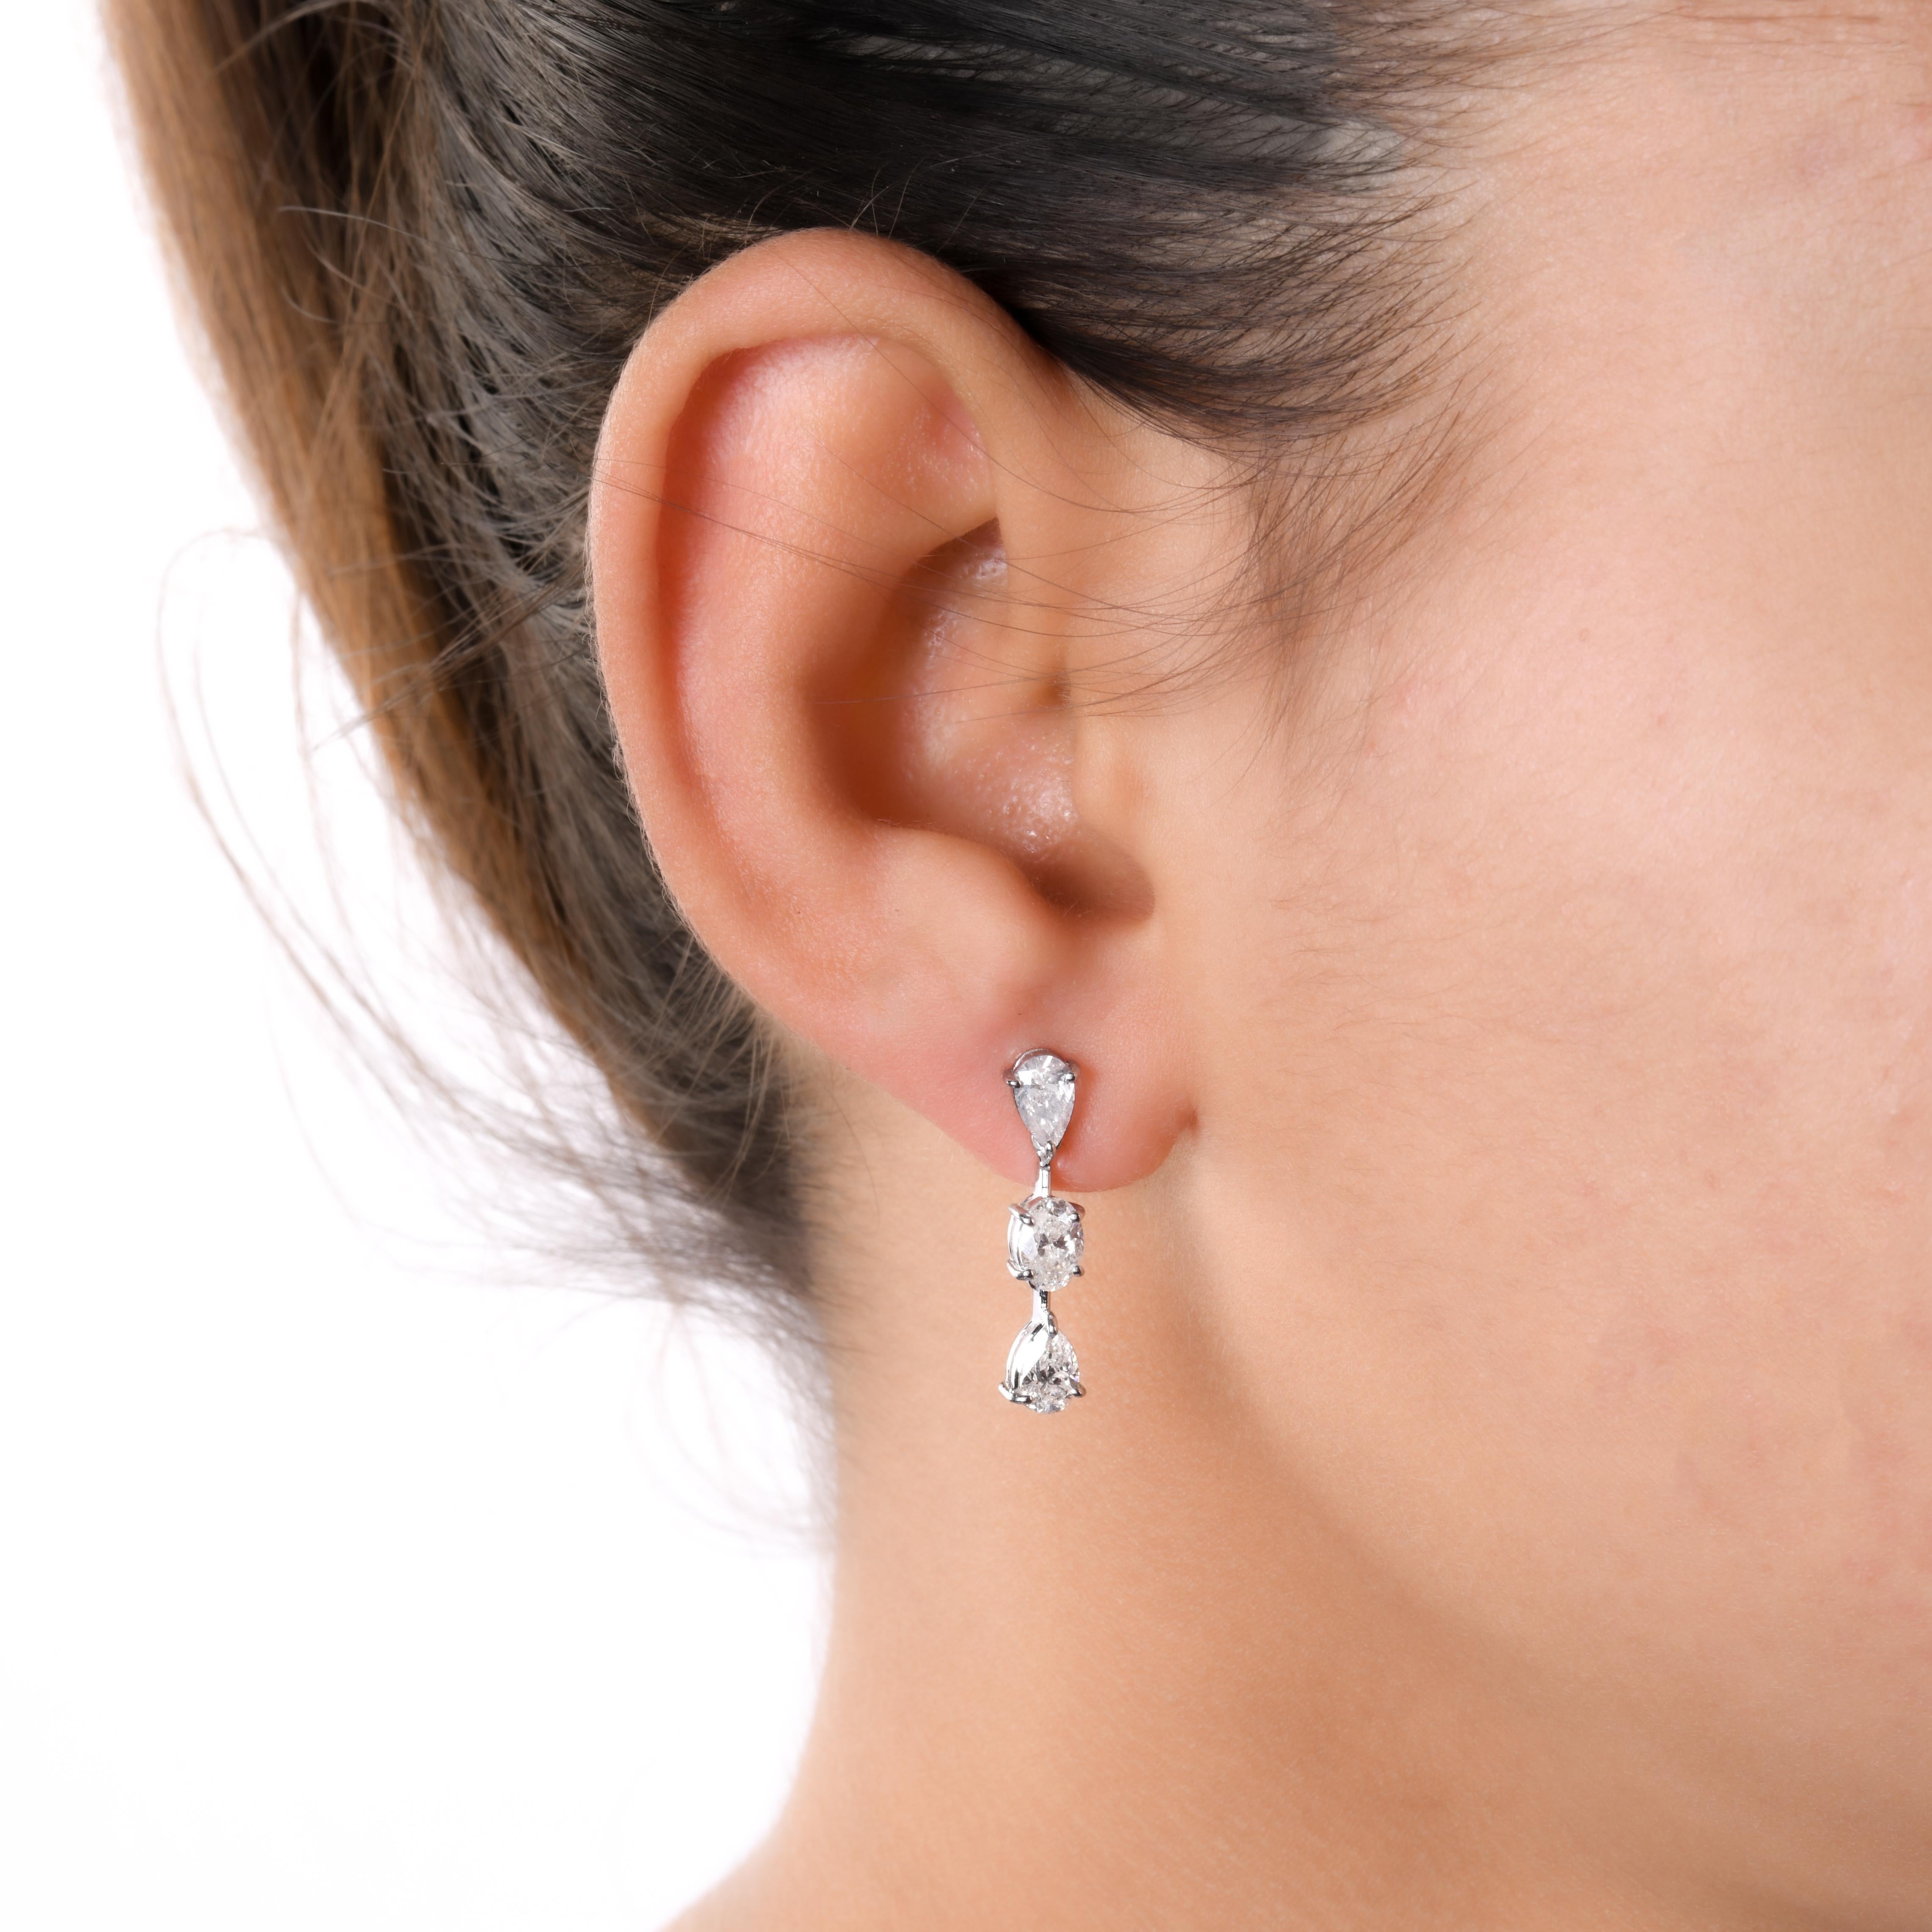 dangling earrings